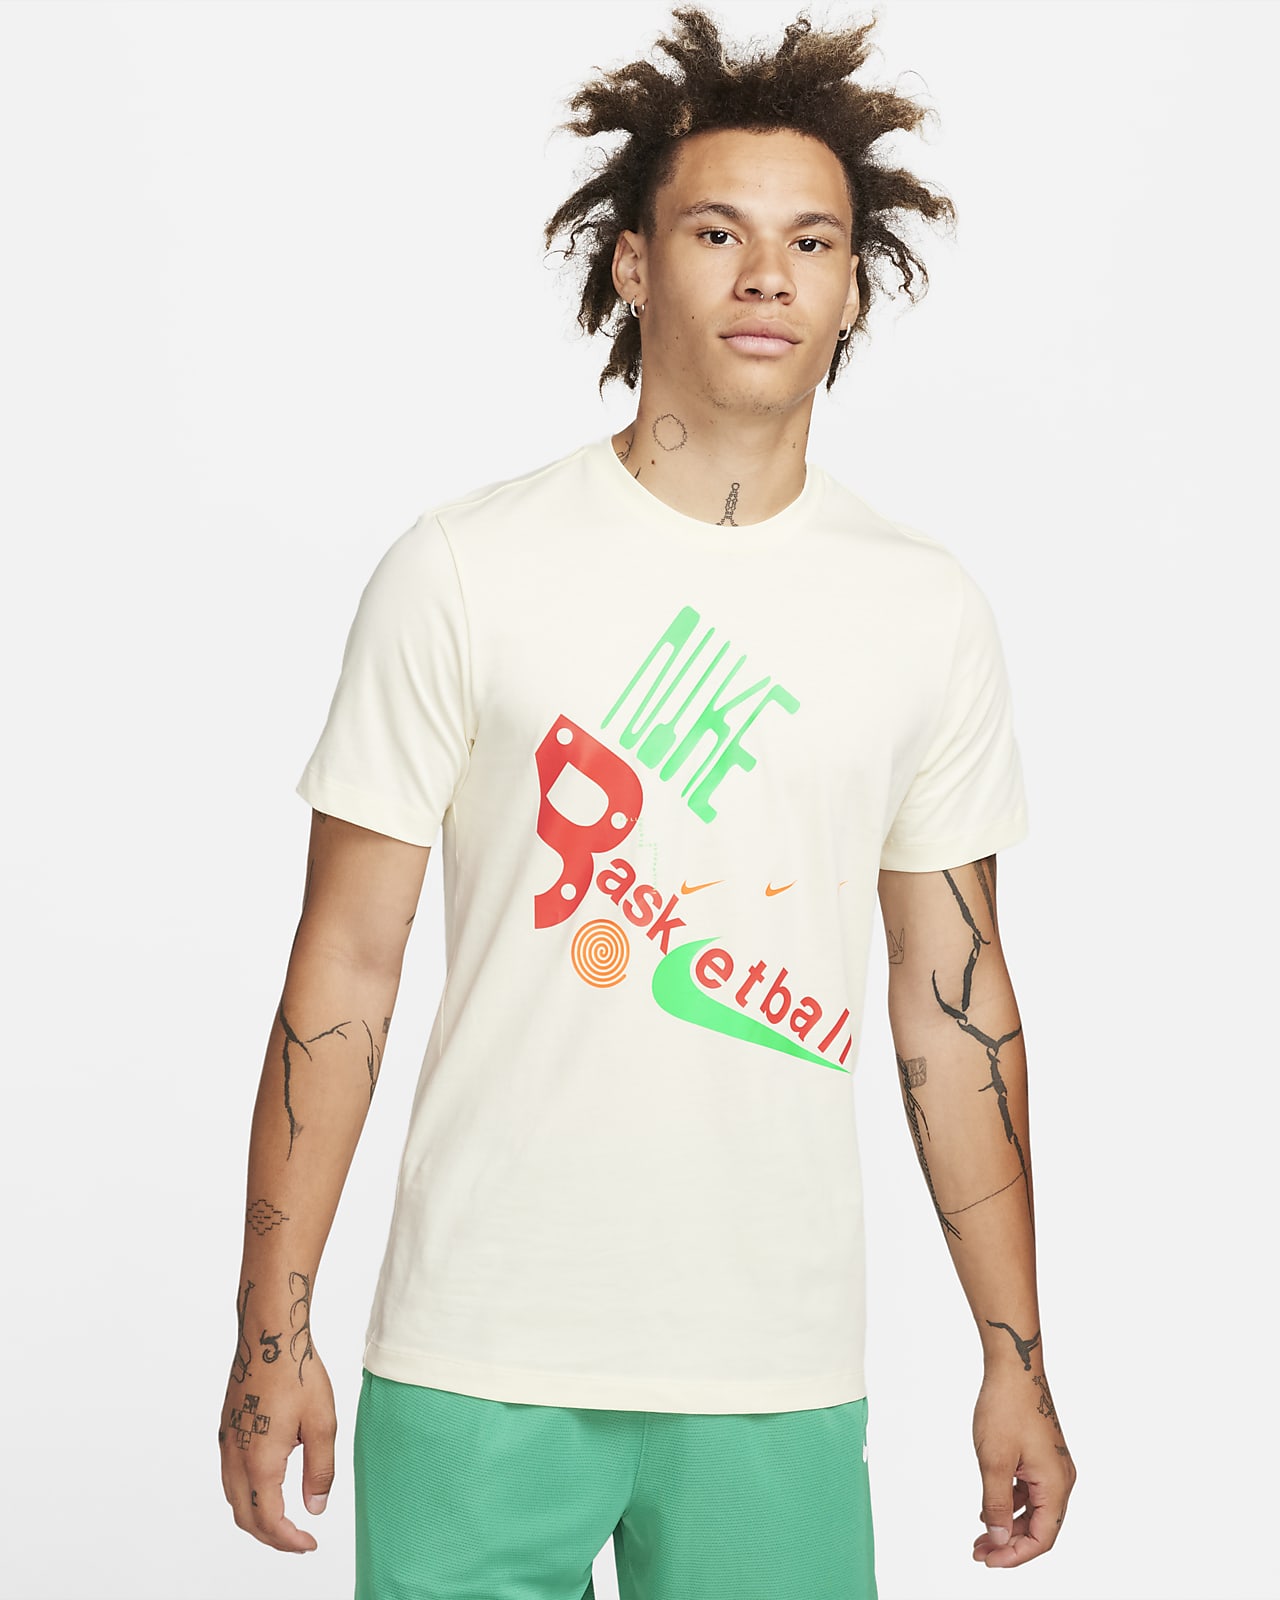 shirt with logo - StclaircomoShops, Nike Sportswear CZ8528-063